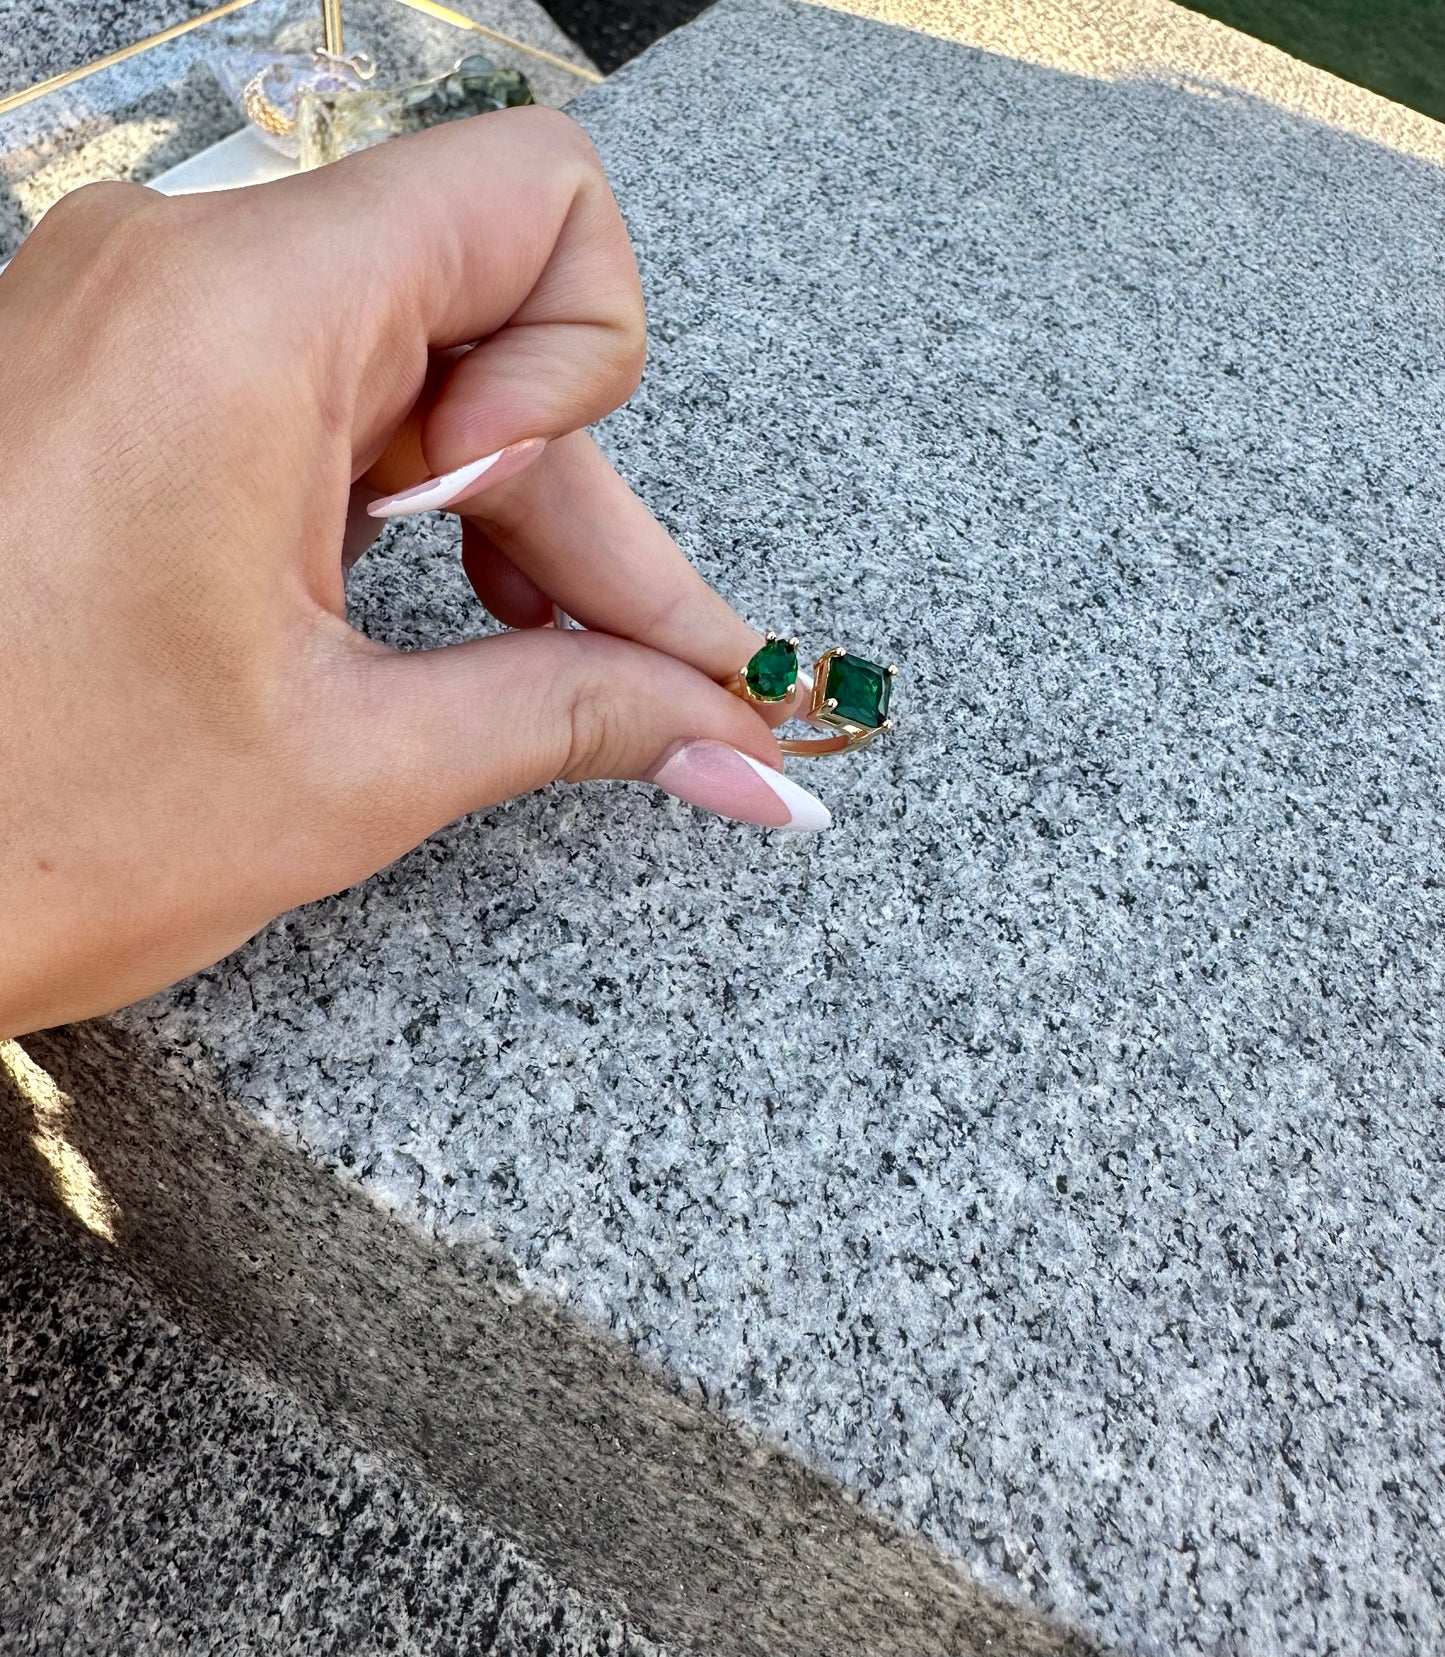 Emerald Dreams Ring